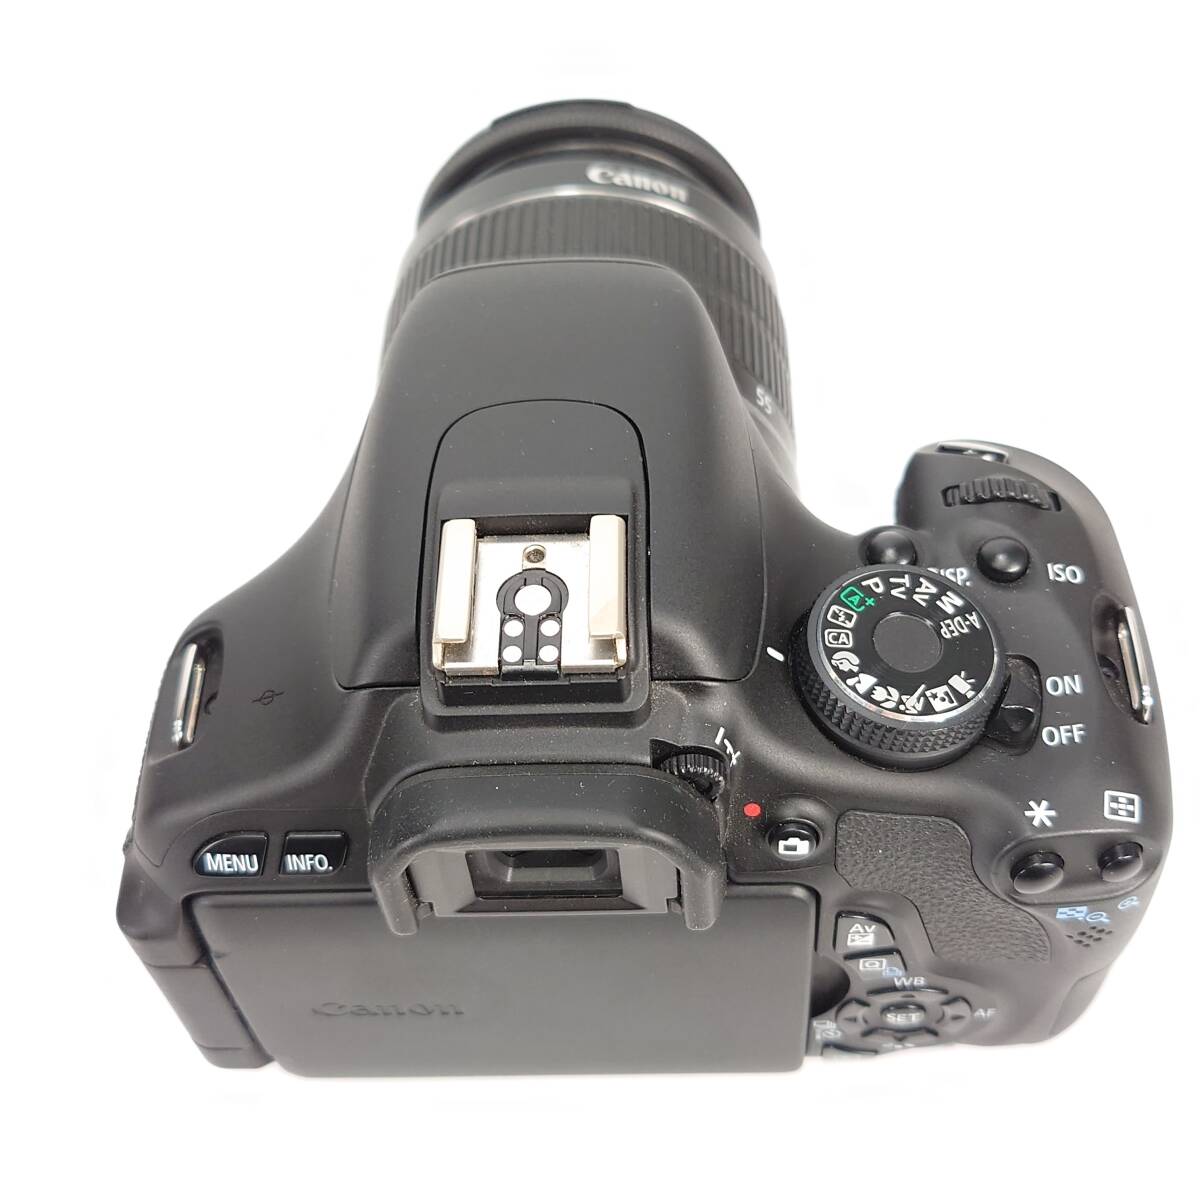 1スタ 美品 CANON EOS KISS X5 デジタル一眼レフカメラ EF-S 18-55mm